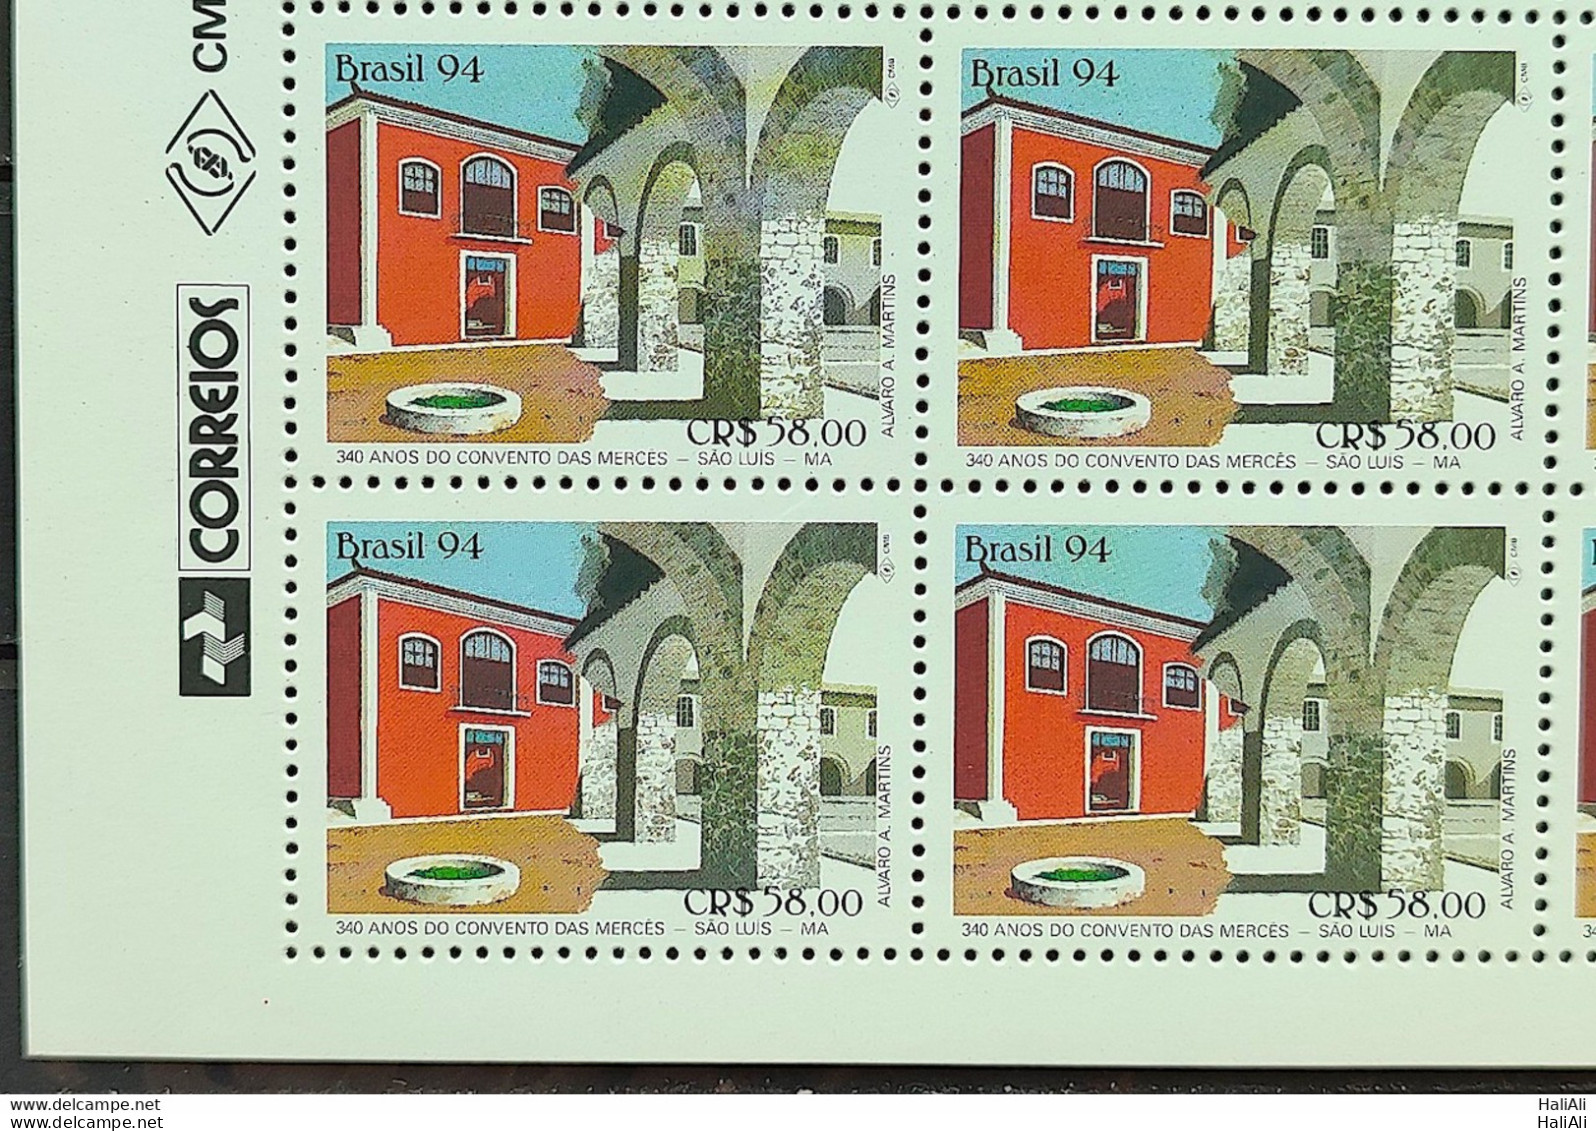 C 1881 Brazil Stamp Convent Of Mercês Religion Education 1994 Block Of 4 Vignette Correios - Nuevos